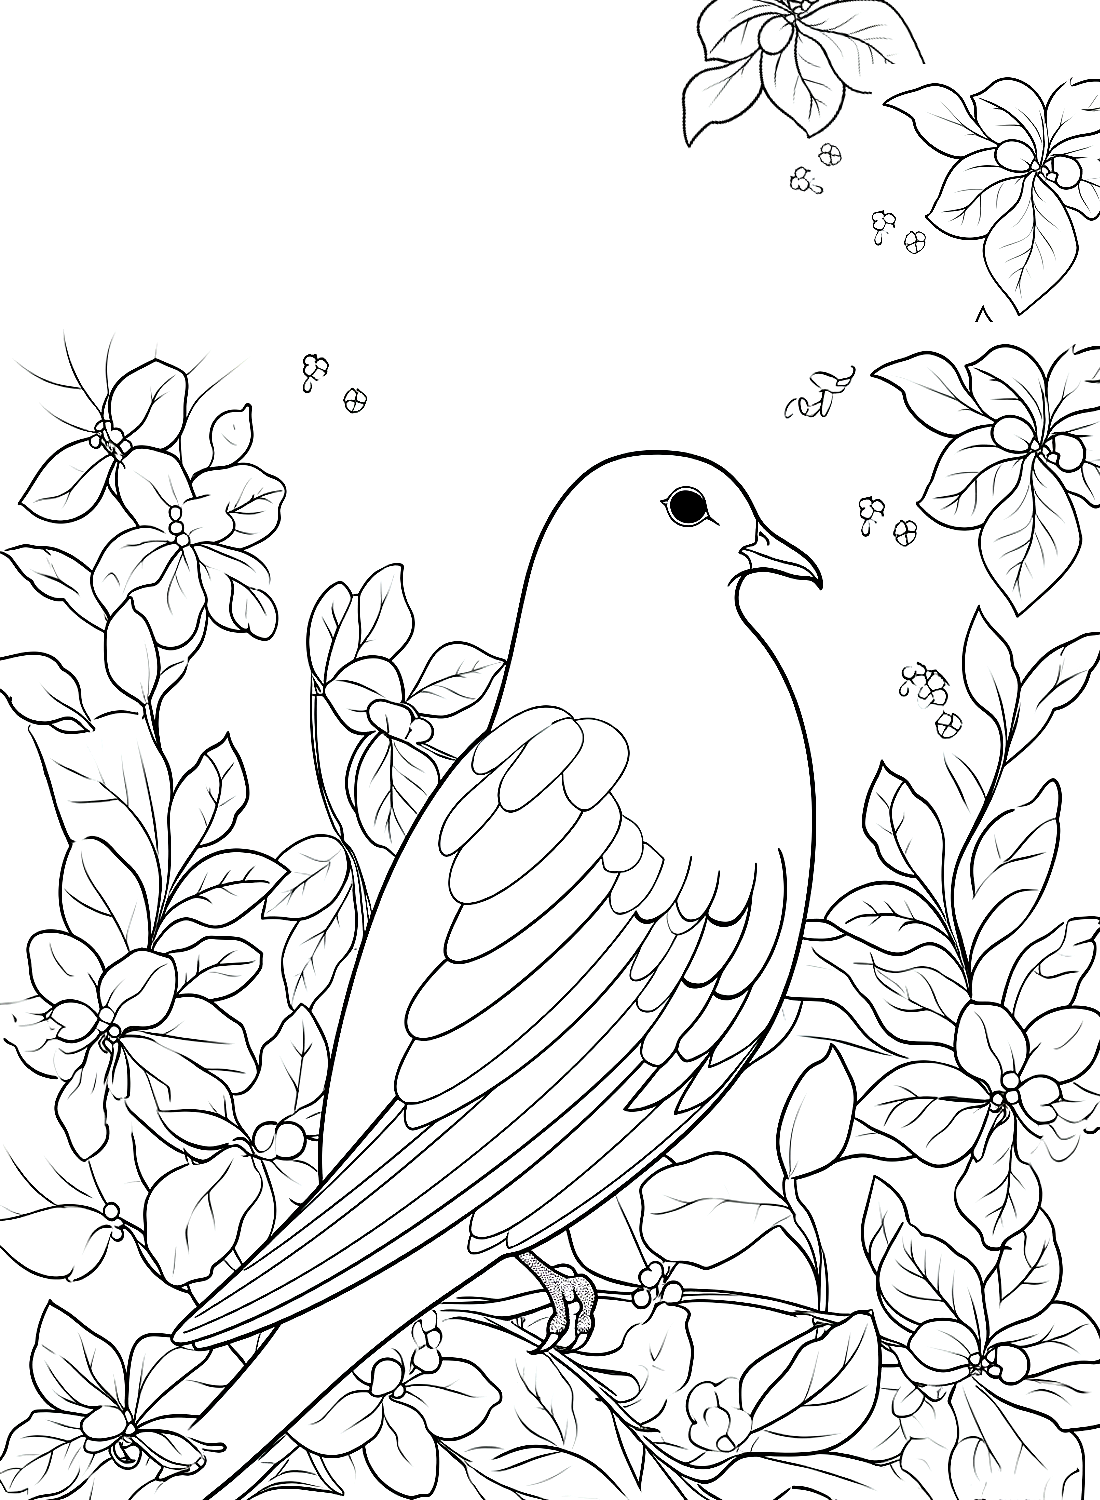 Een duif en bloemen van Doves